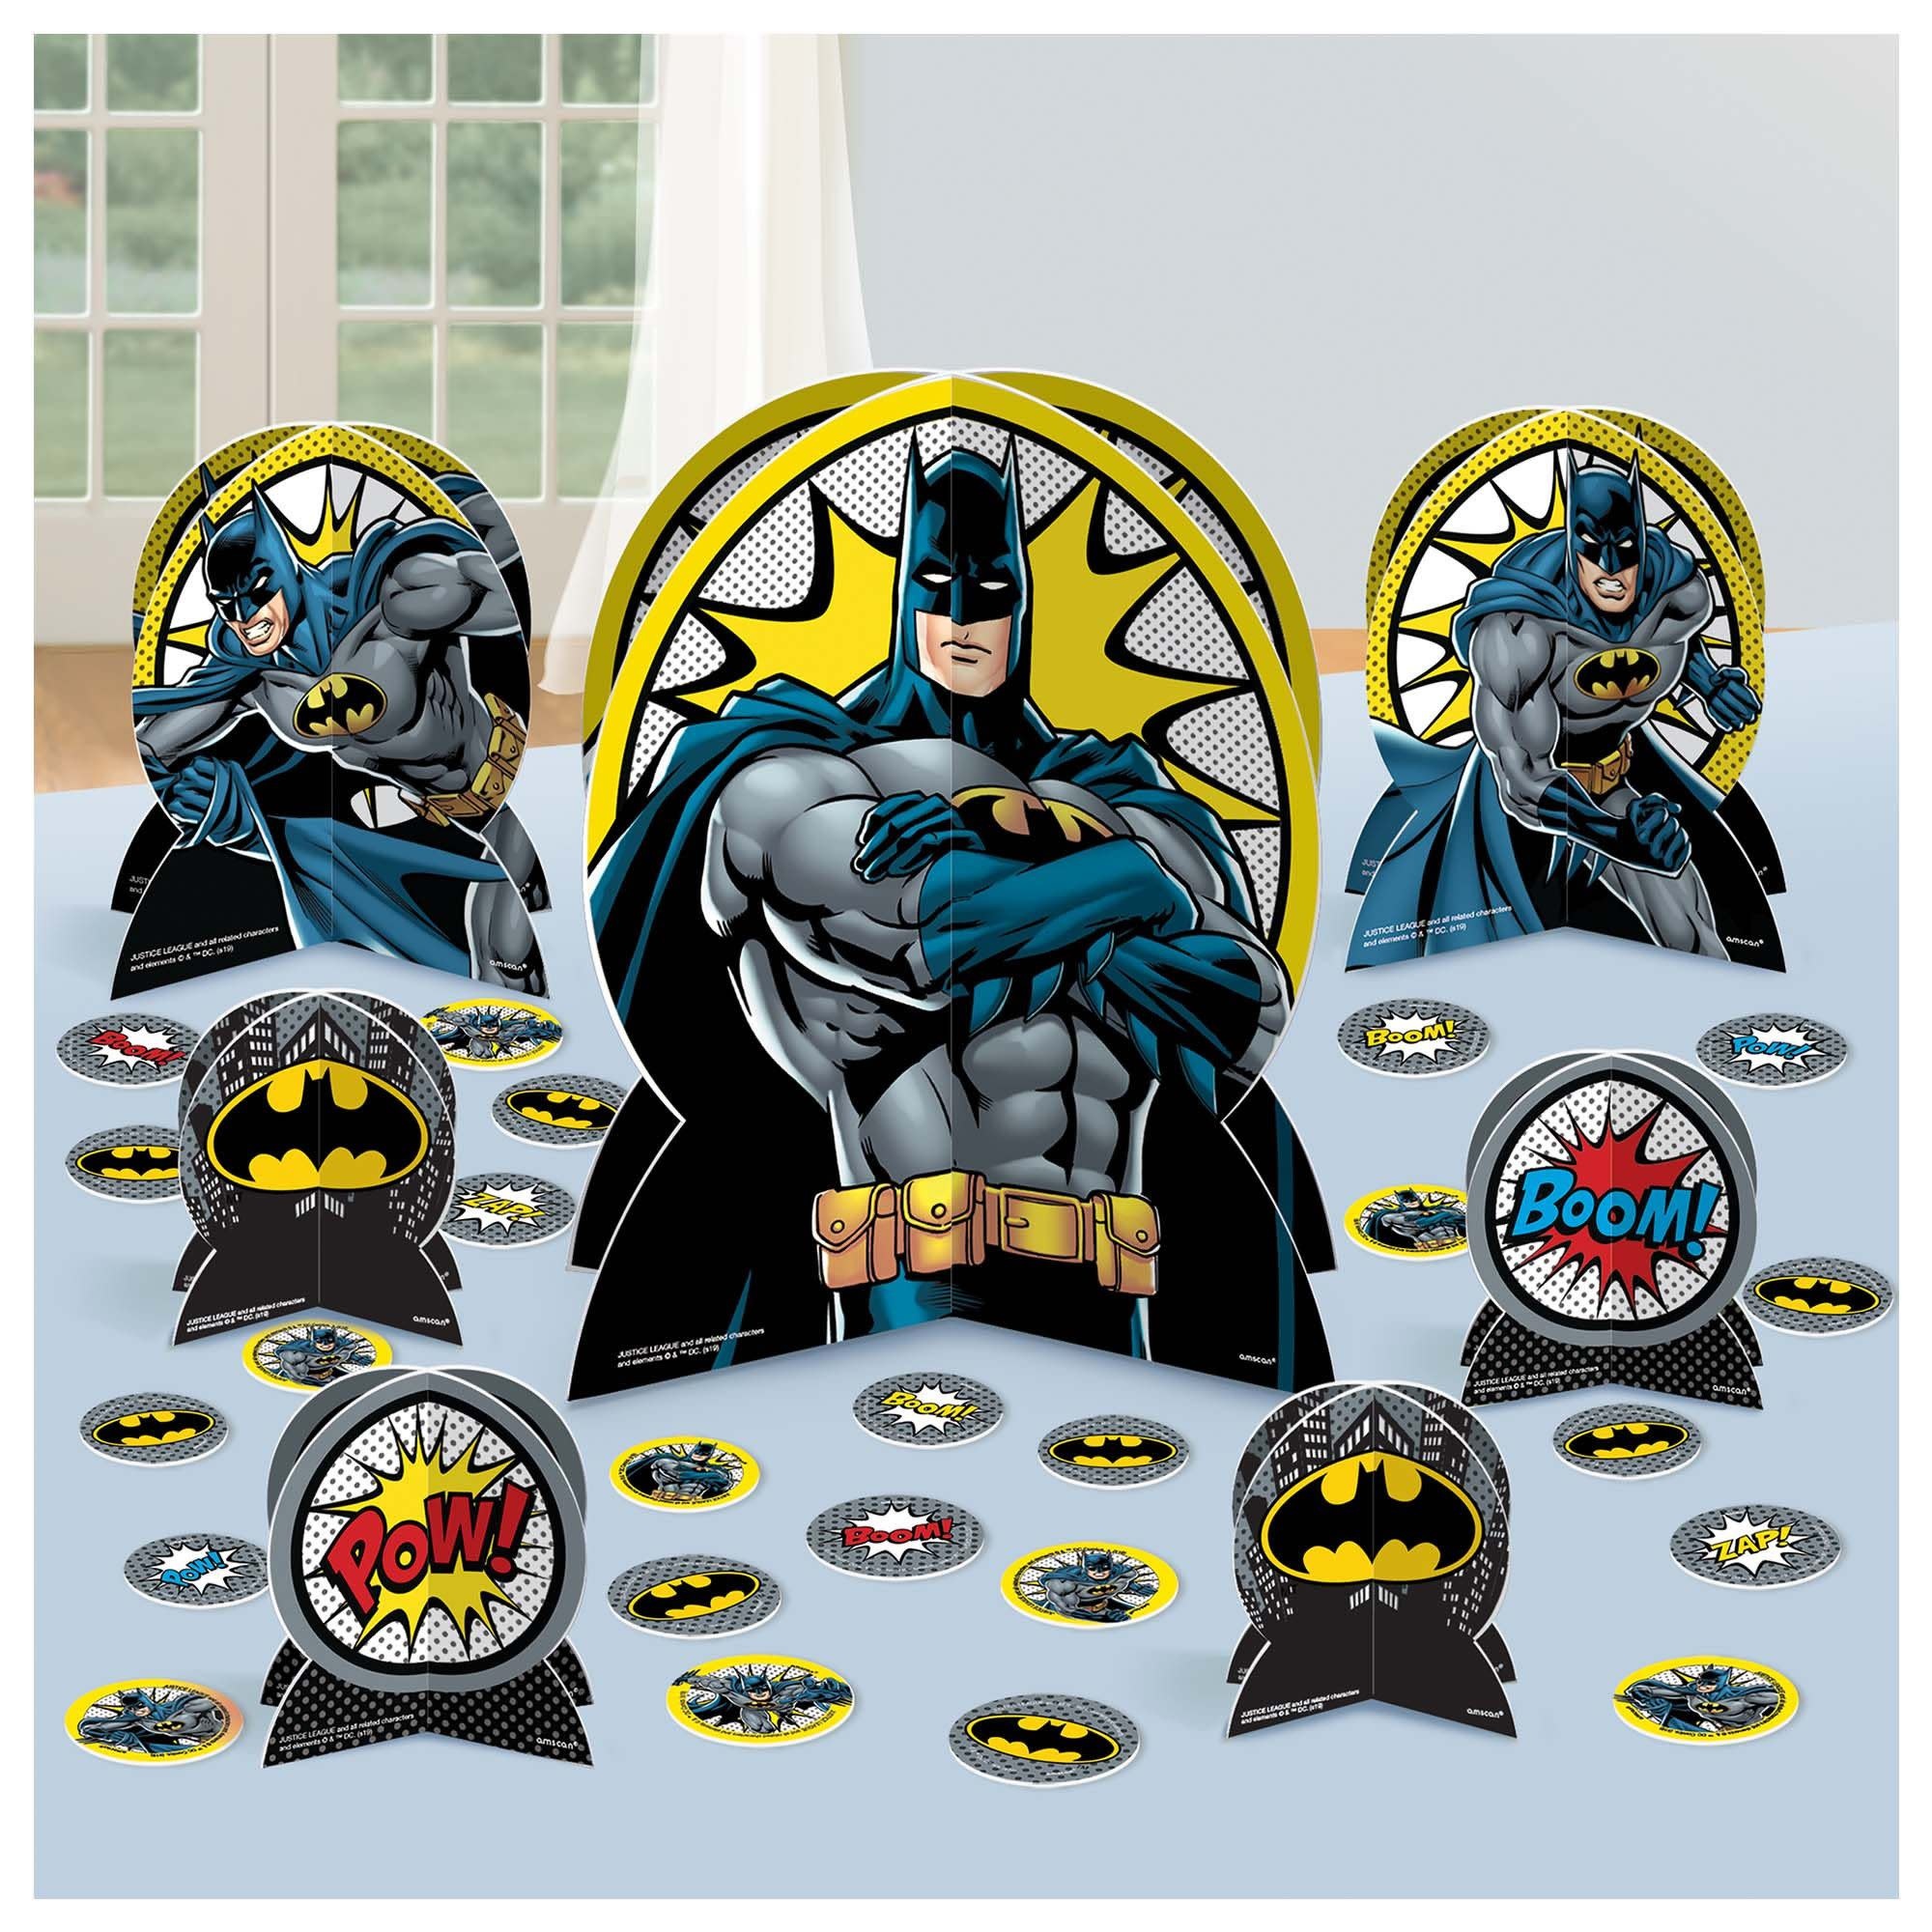 Batman™ Heroes Unite Table Centerpiece Kit